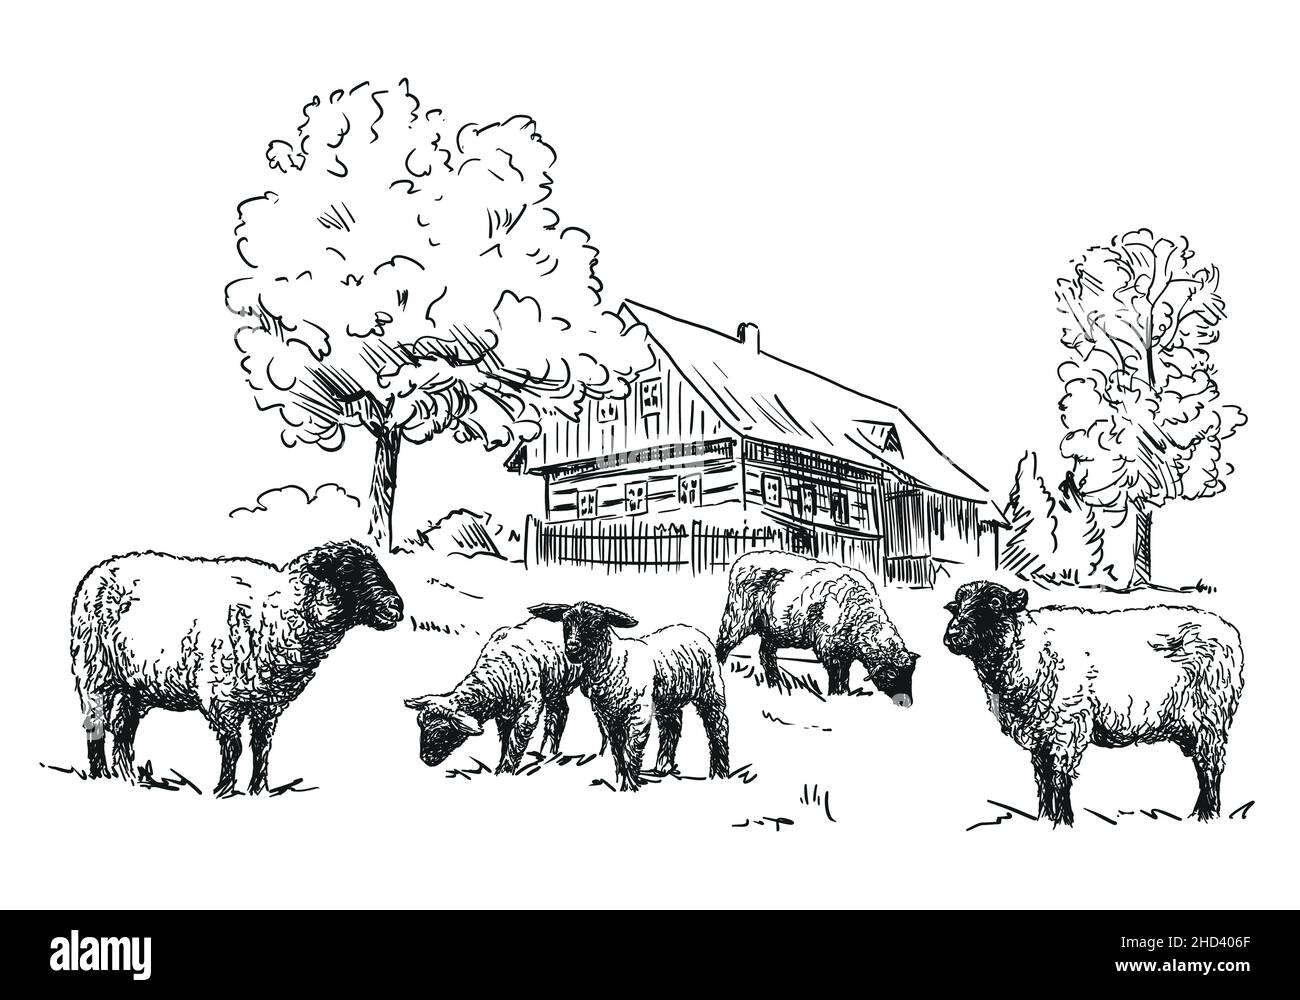 Ferme de moutons - un troupeau de moutons avec chalet en bois à colombages, illustration noir et blanc, fond blanc, vecteur Illustration de Vecteur